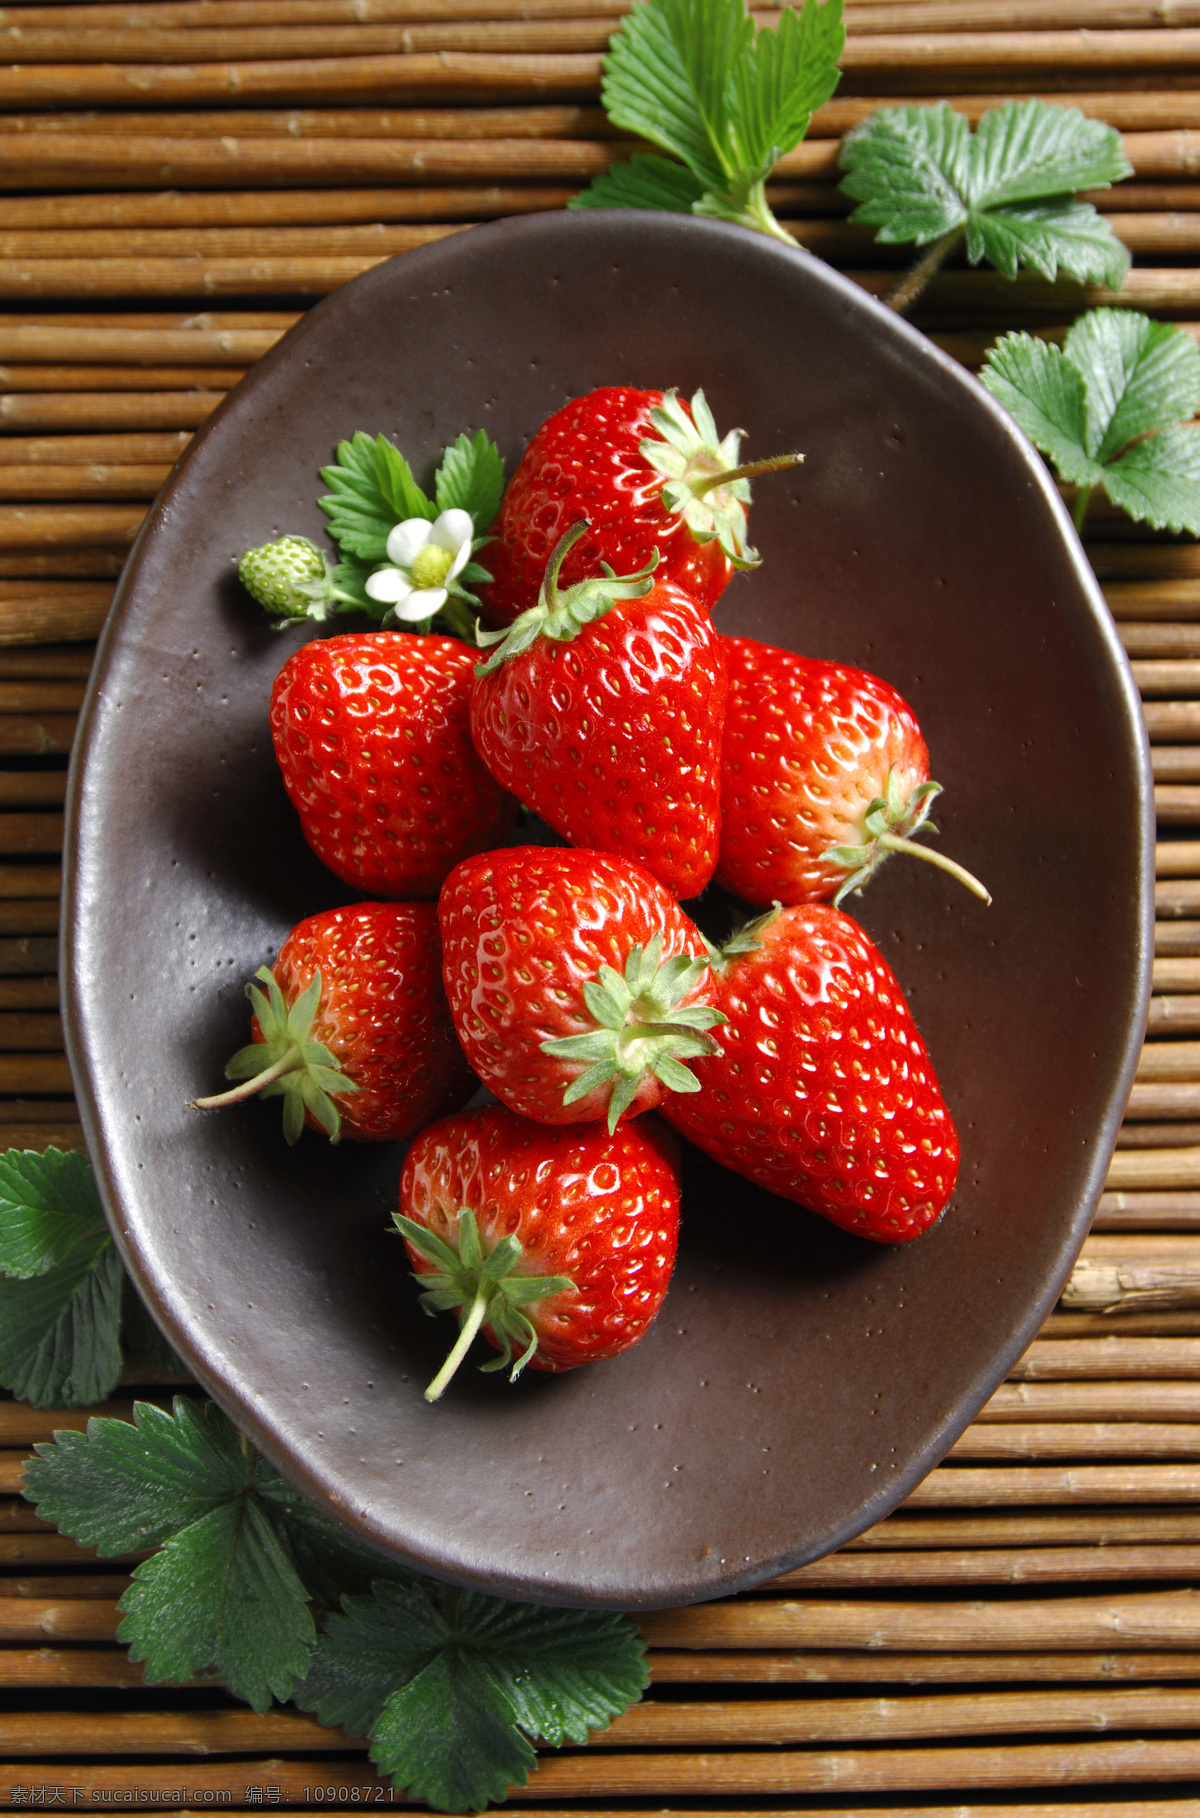 水果免费下载 草莓 高清 红色 绿叶 盘子 水果 叶子 诱人 风景 生活 旅游餐饮